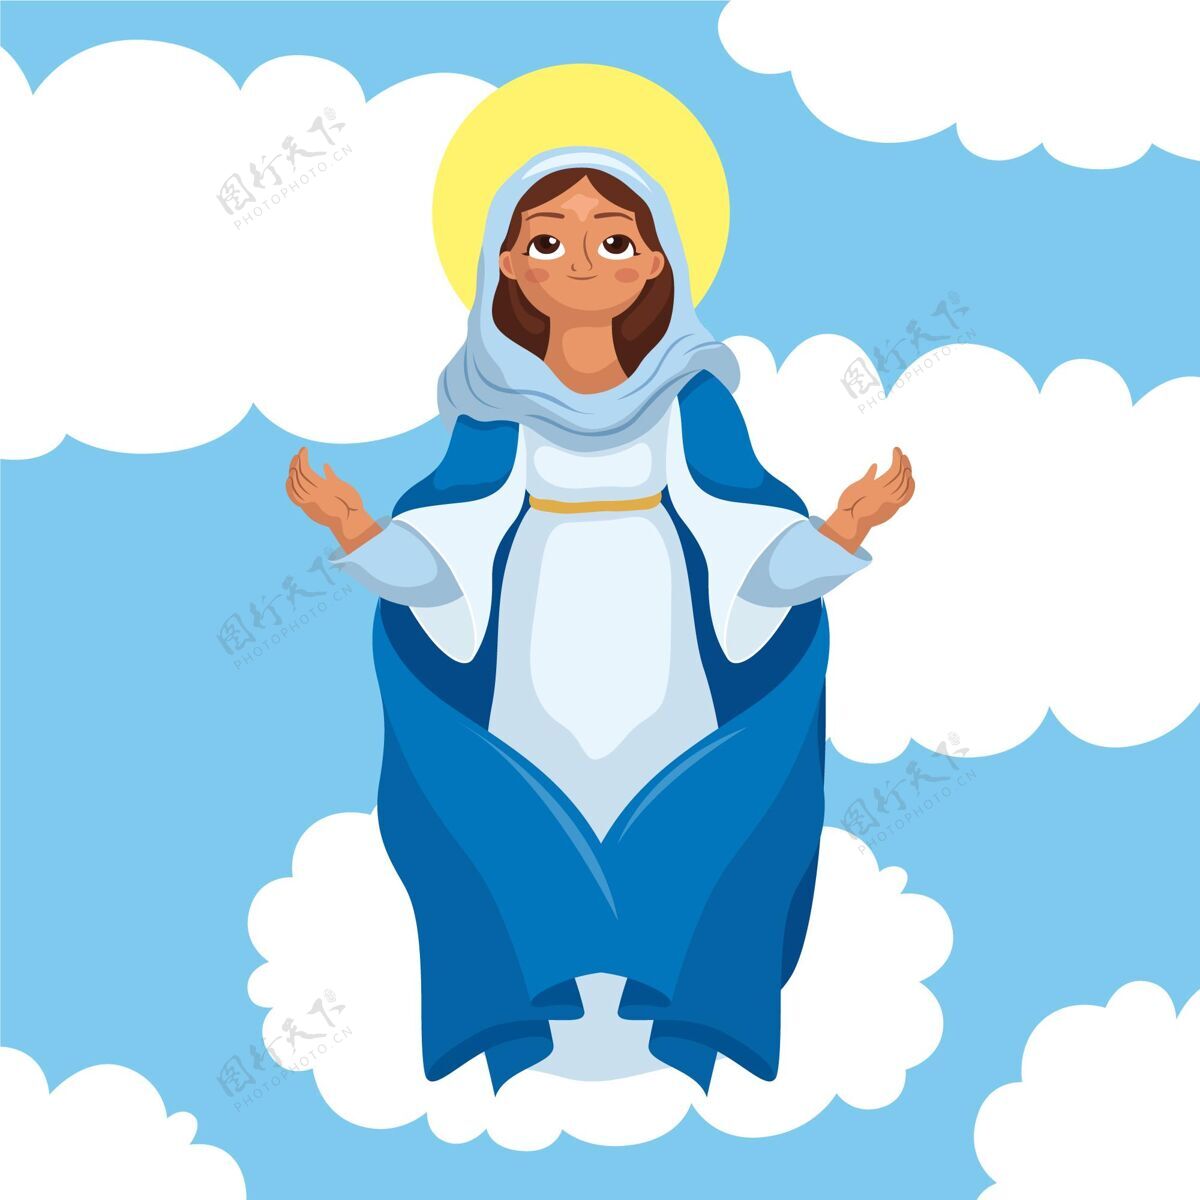 8月15日卡通玛丽插画设想圣母玛利亚基督教天主教